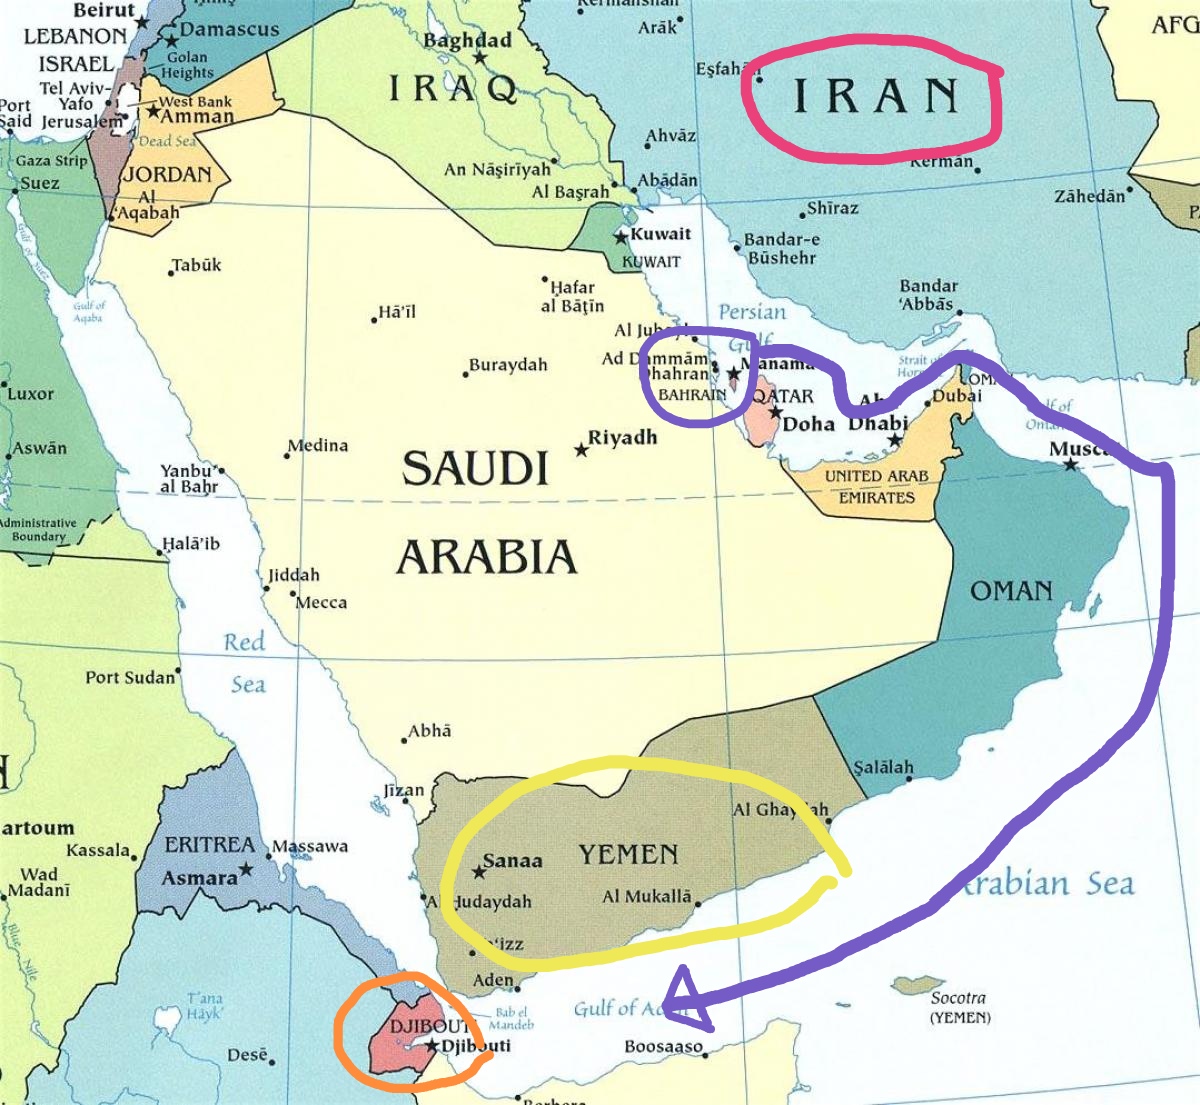 Gli USA fanno coalizione nel Mar Rosso per contrastare lo #Yemen . Sebbene abbiano una base militare lì difronte a Gibuti, il comando lo piazzano in Bahrain, nel Golfo Persico, di fronte a #Iran . Cosa hanno in mente?